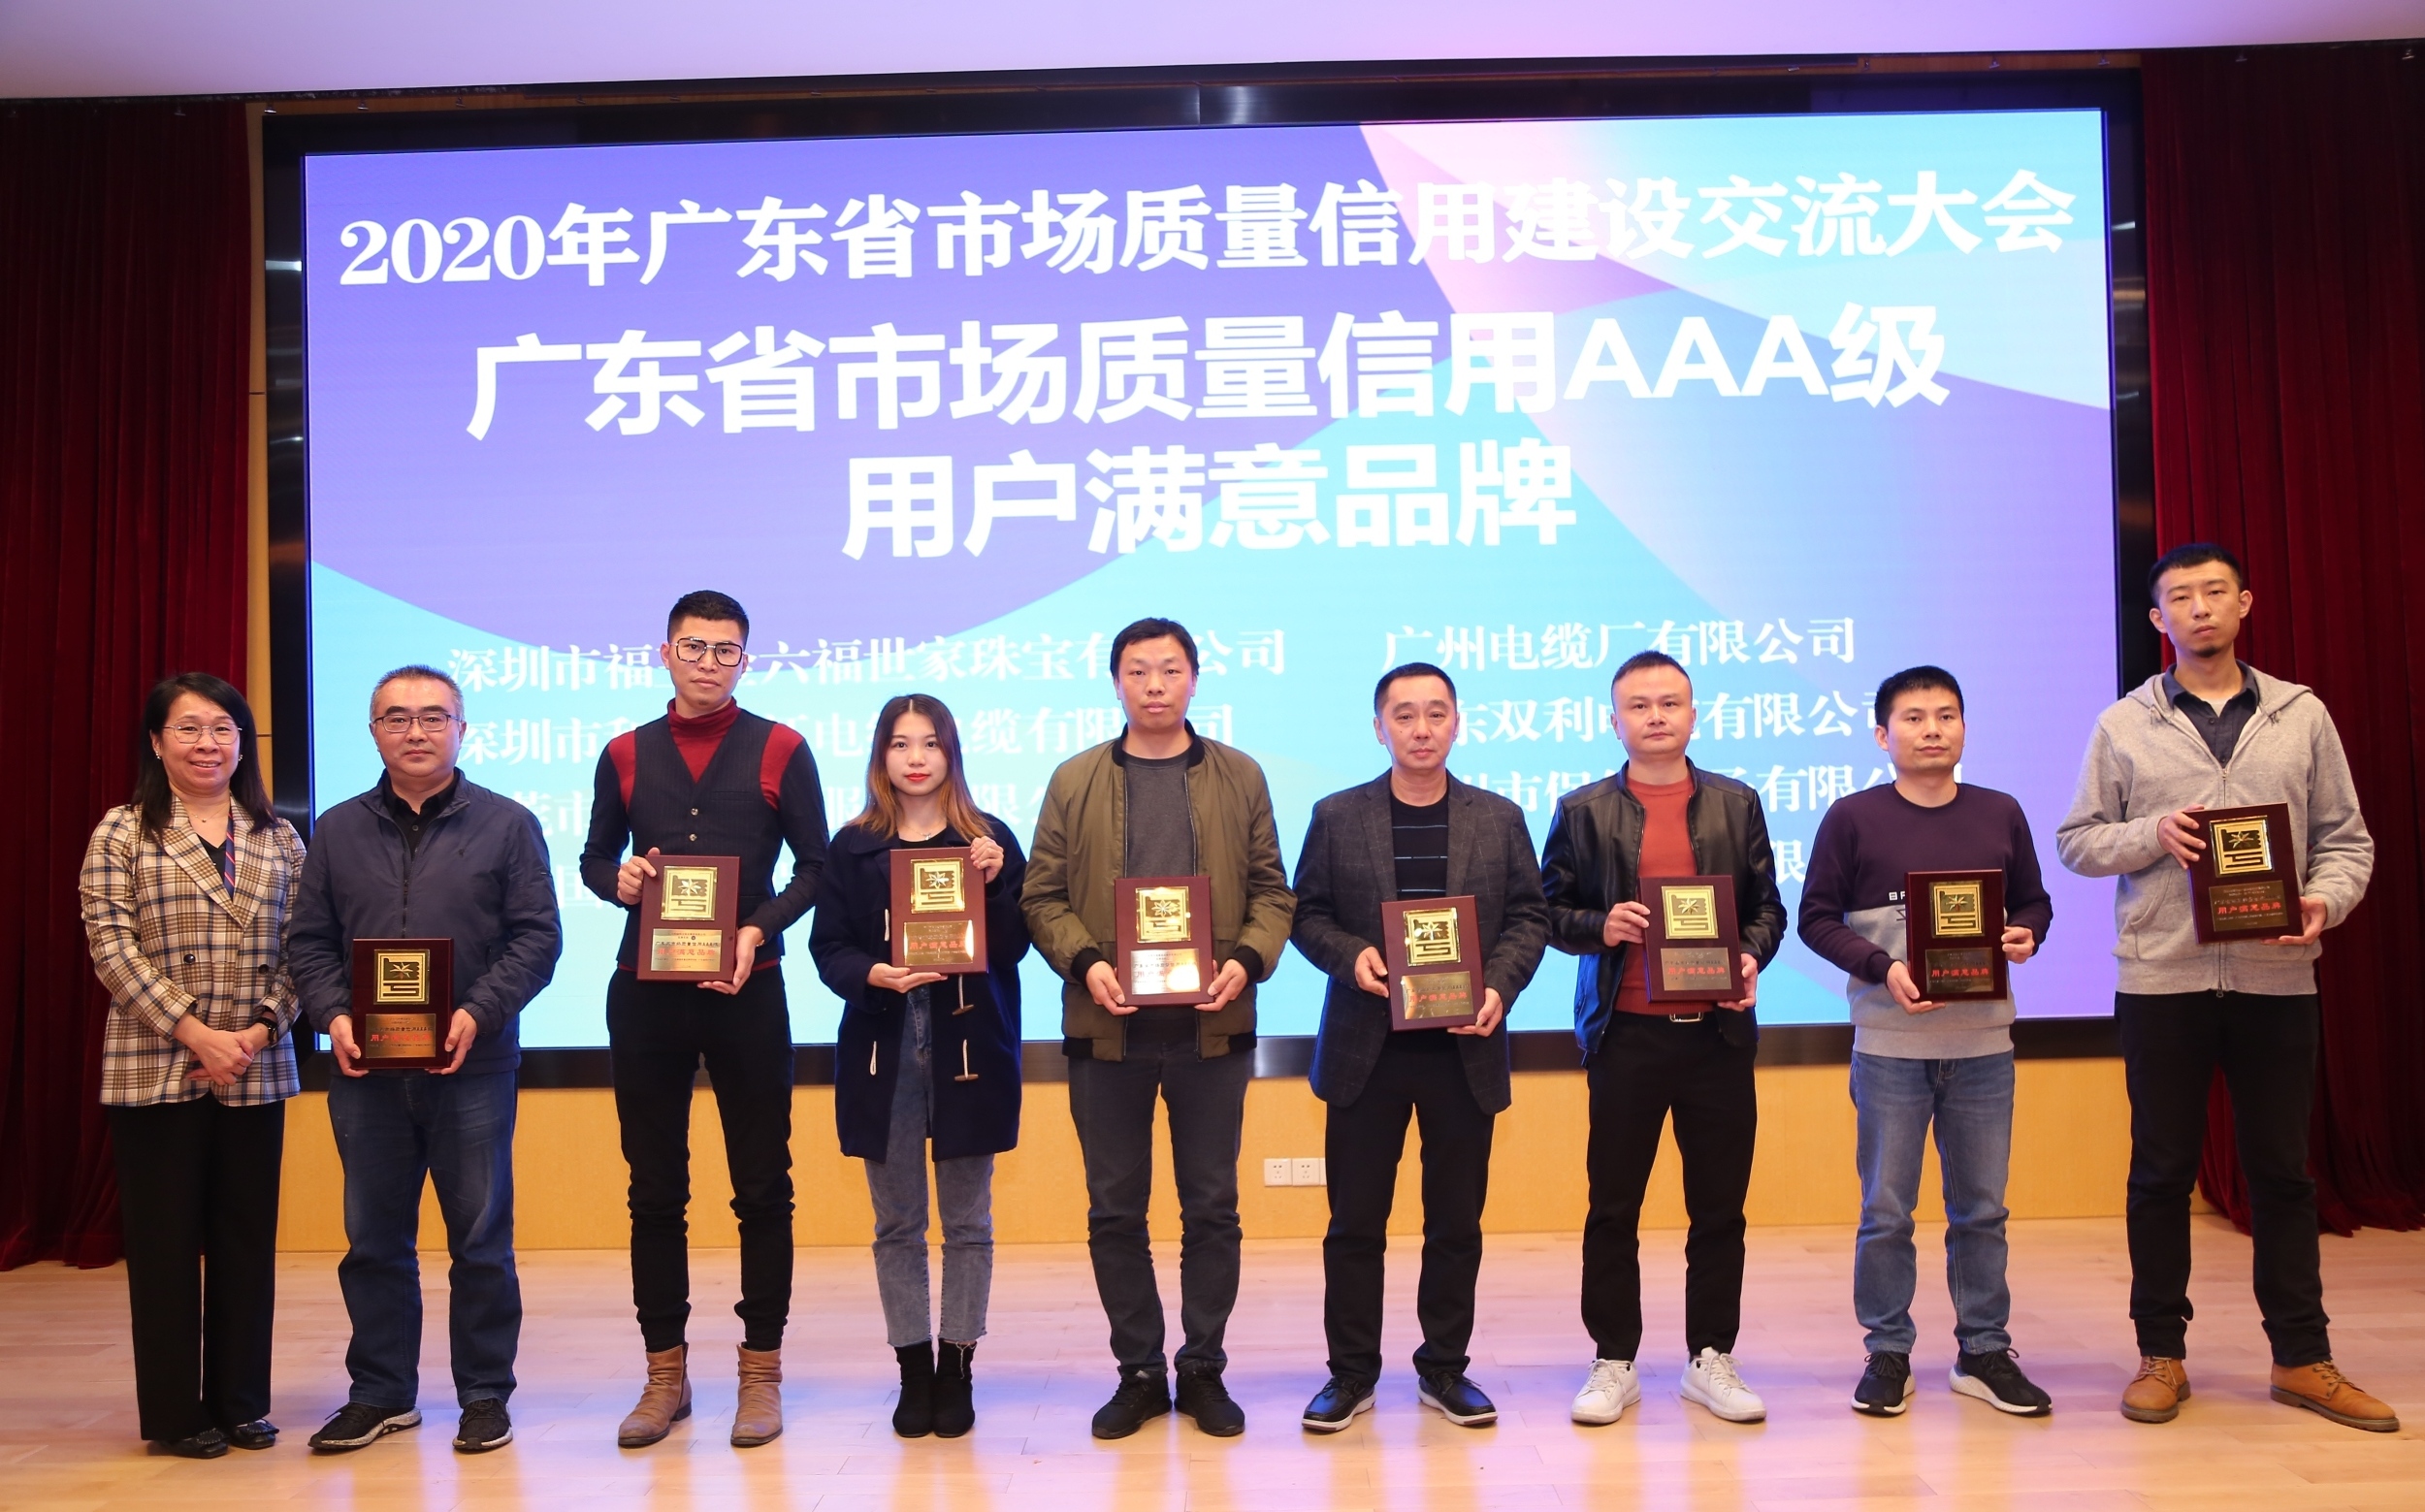 广州电缆接受广东省市场质量信用AAA级用户满意企业和品牌荣誉奖牌